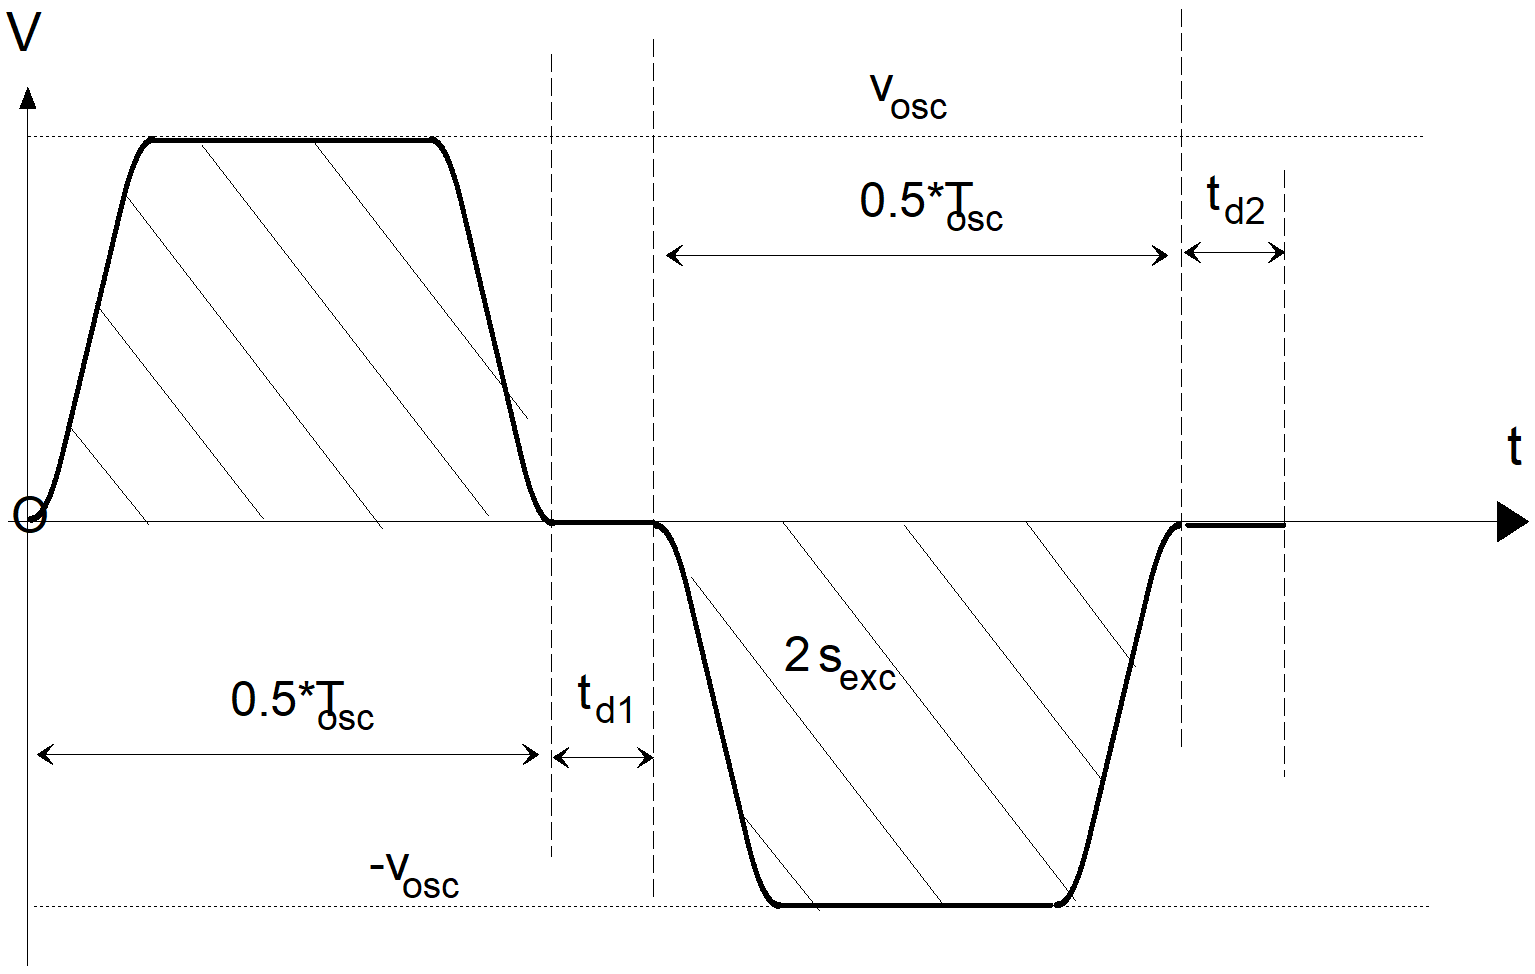 Pendelbewegung im Zeitbereich mit nichtlinearem Slope-Profil